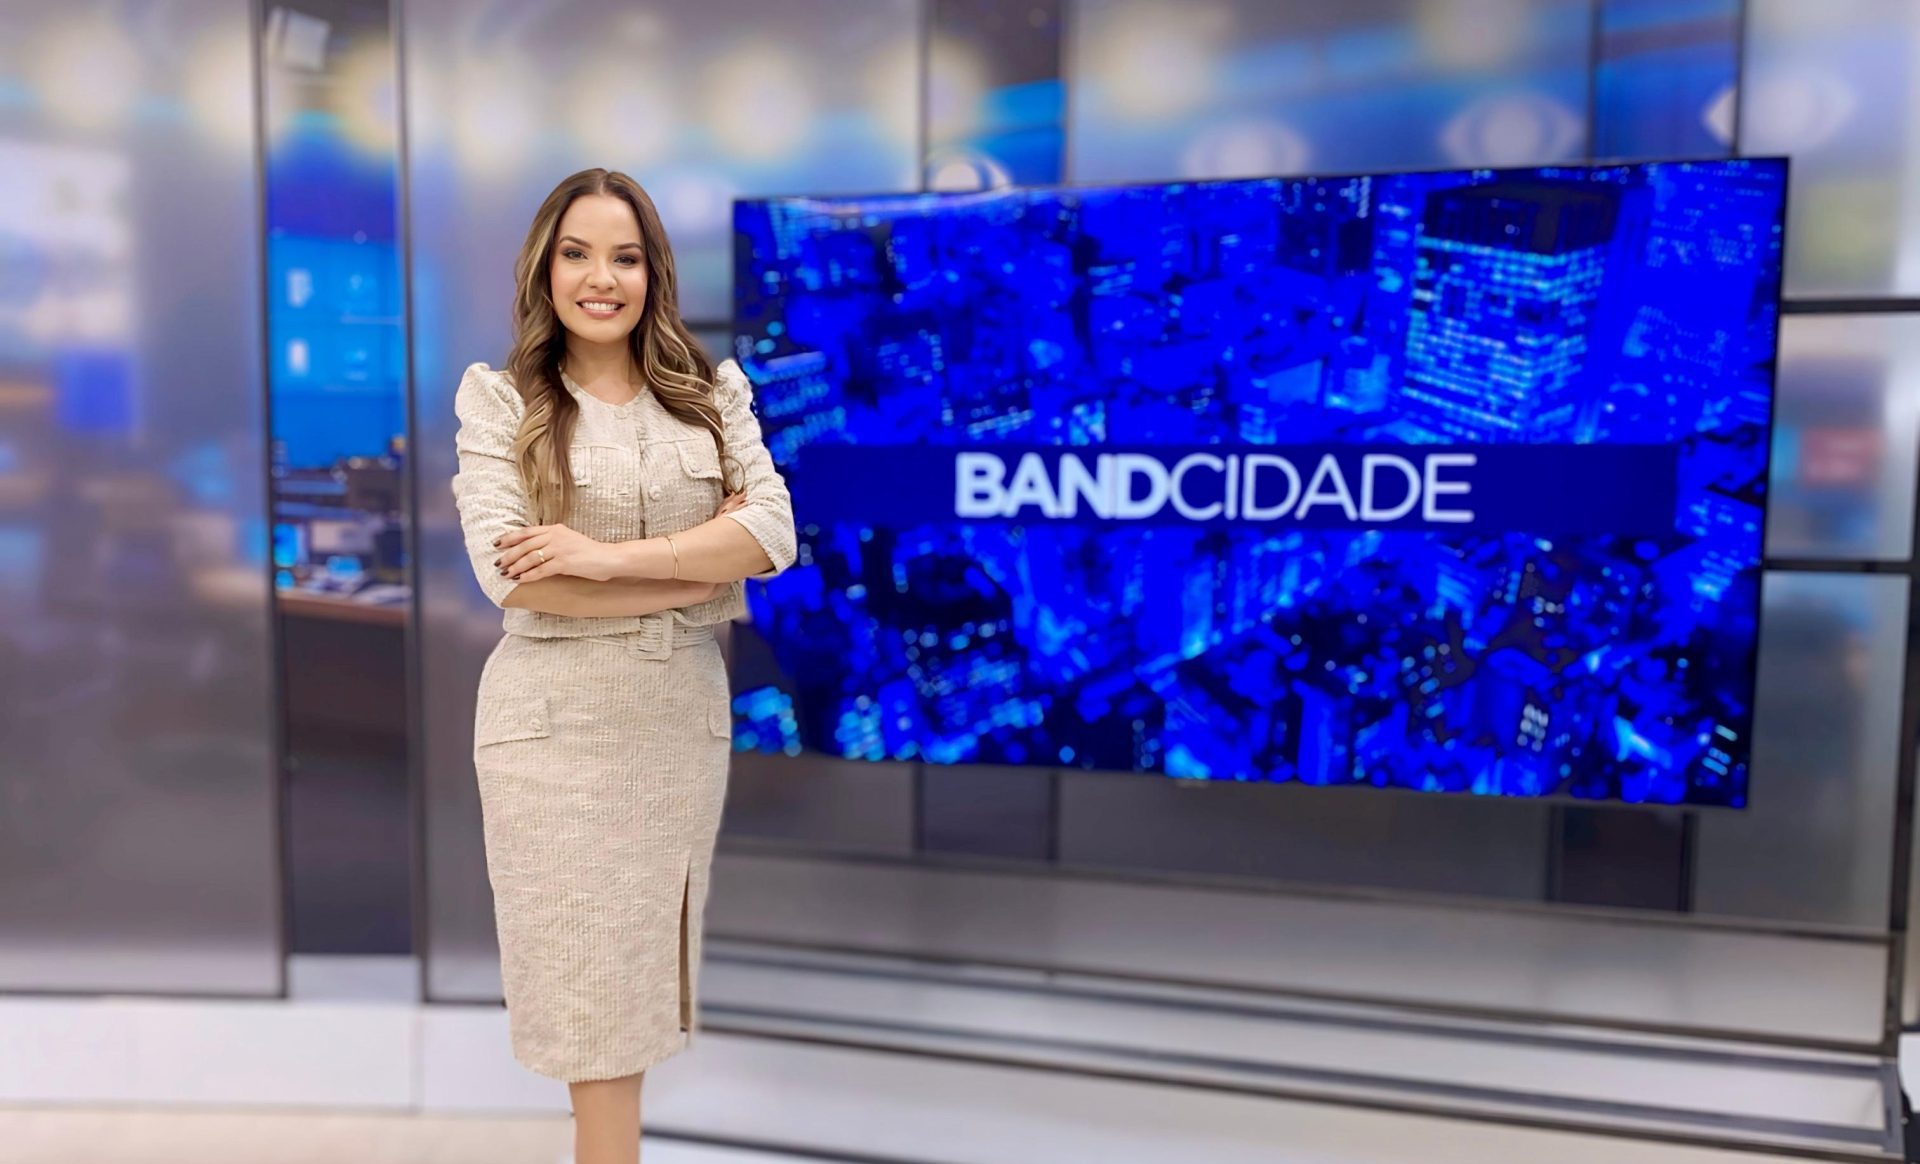 Band Ceará estreia novos cenários, programa e apresentadoras